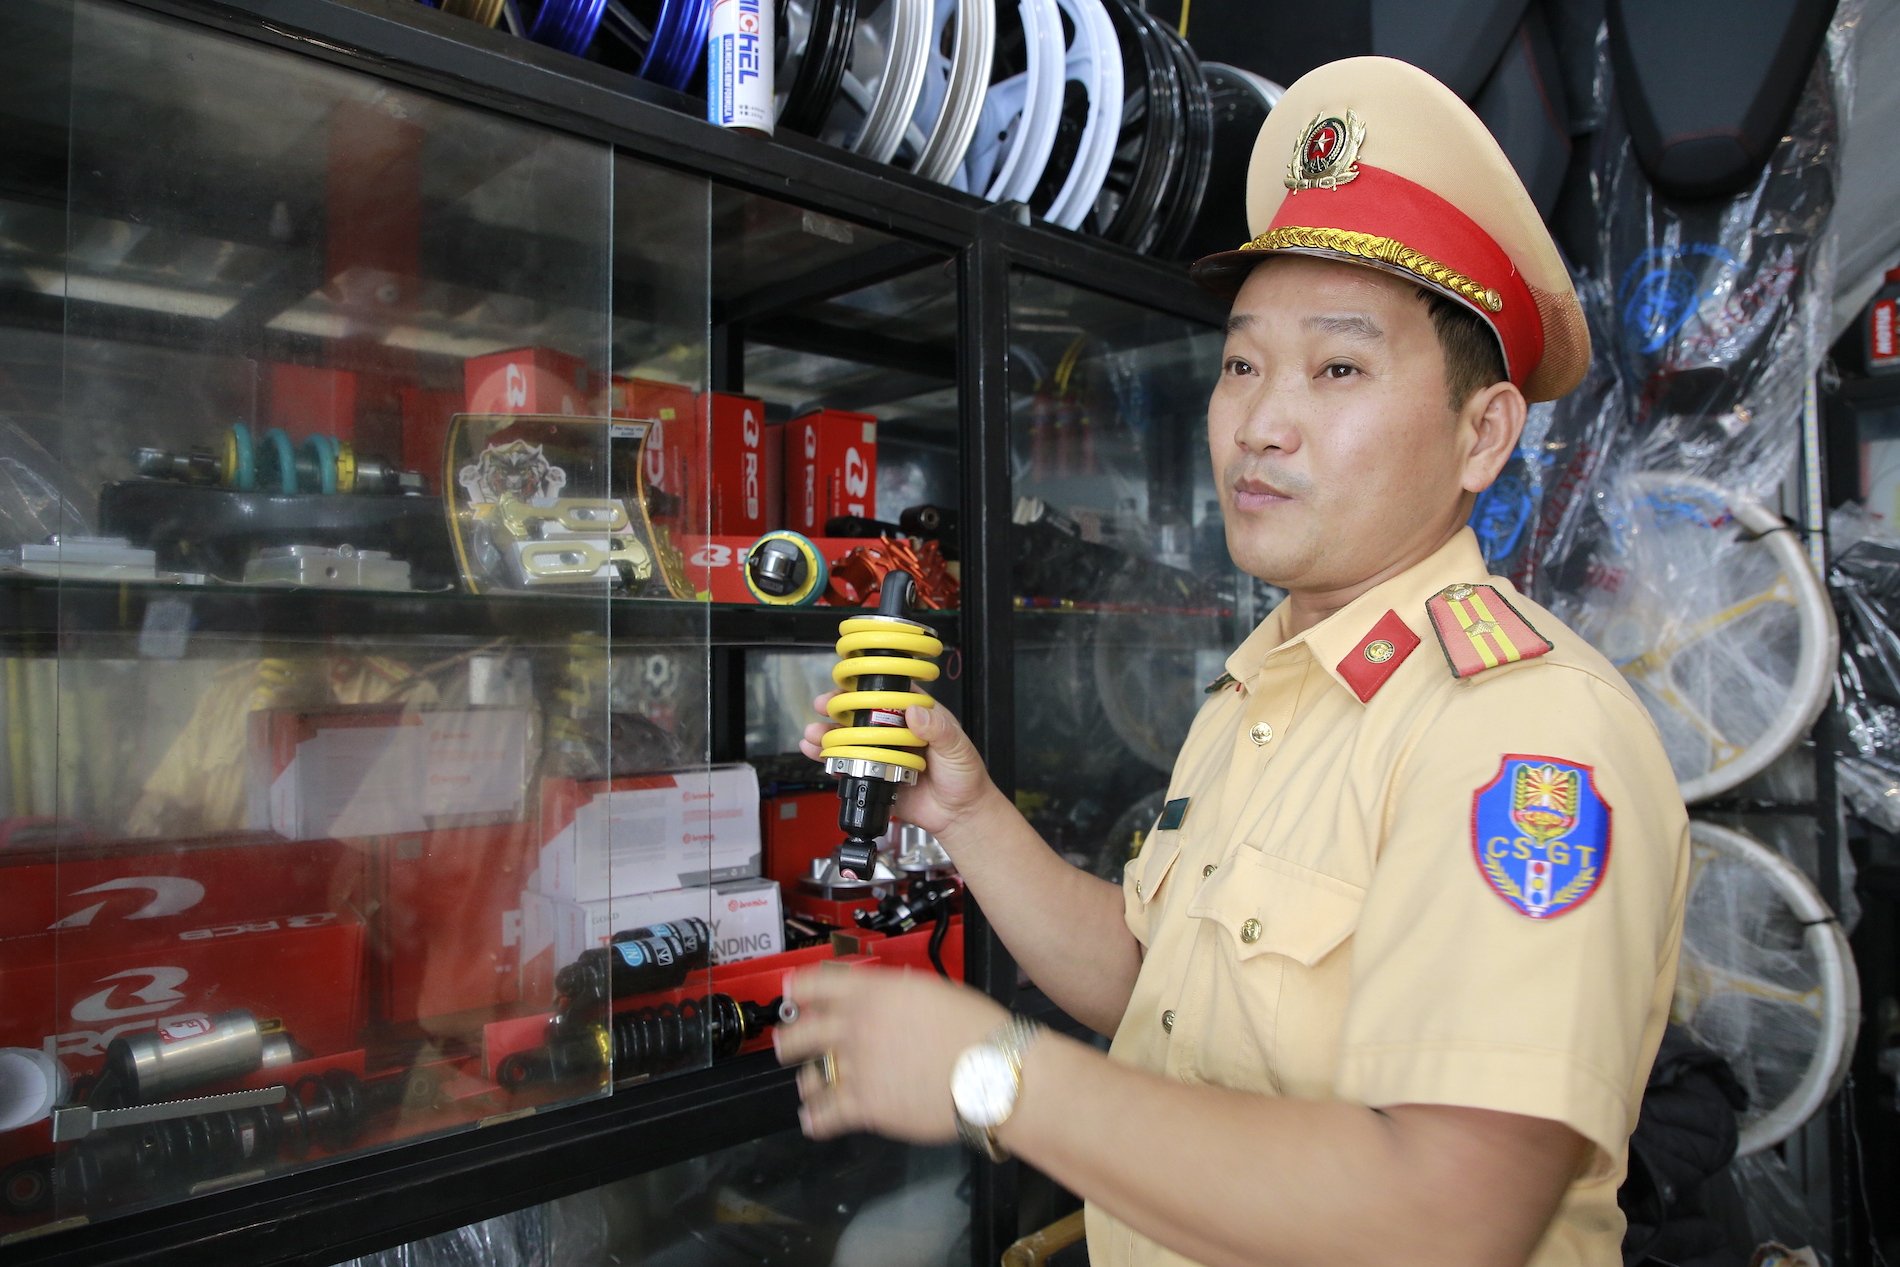 Quảng Nam: Kiểm tra cơ sở kinh doanh phụ tùng, phát hiện loạt đồ độ chế xe máy - Ảnh 2.